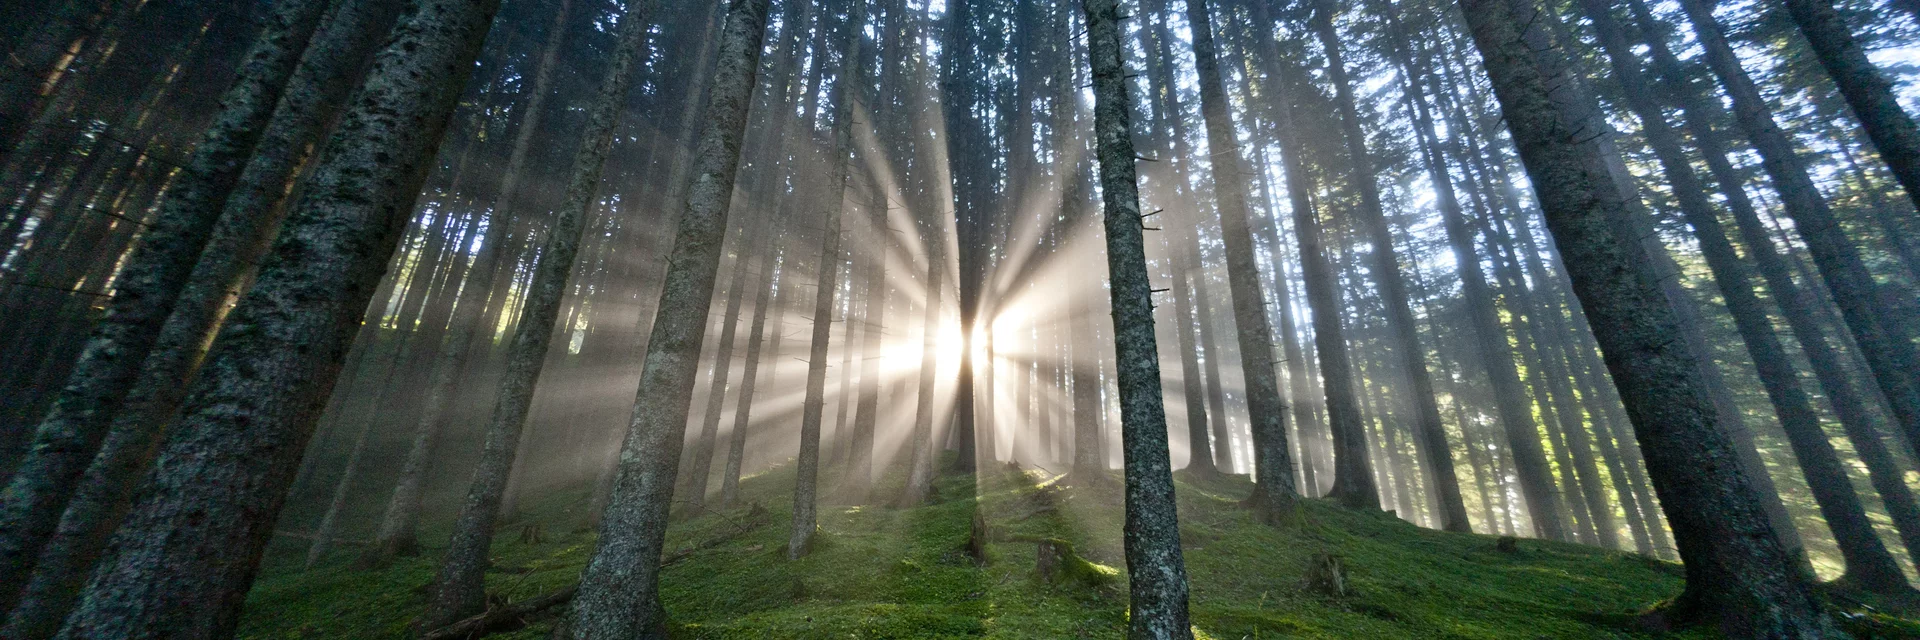 Die Steiermark - Das Grüne Herz Österreichs im UNO-Jahr der Wälder | © STG | Tom Lamm | Nur für Pressezwecke!
